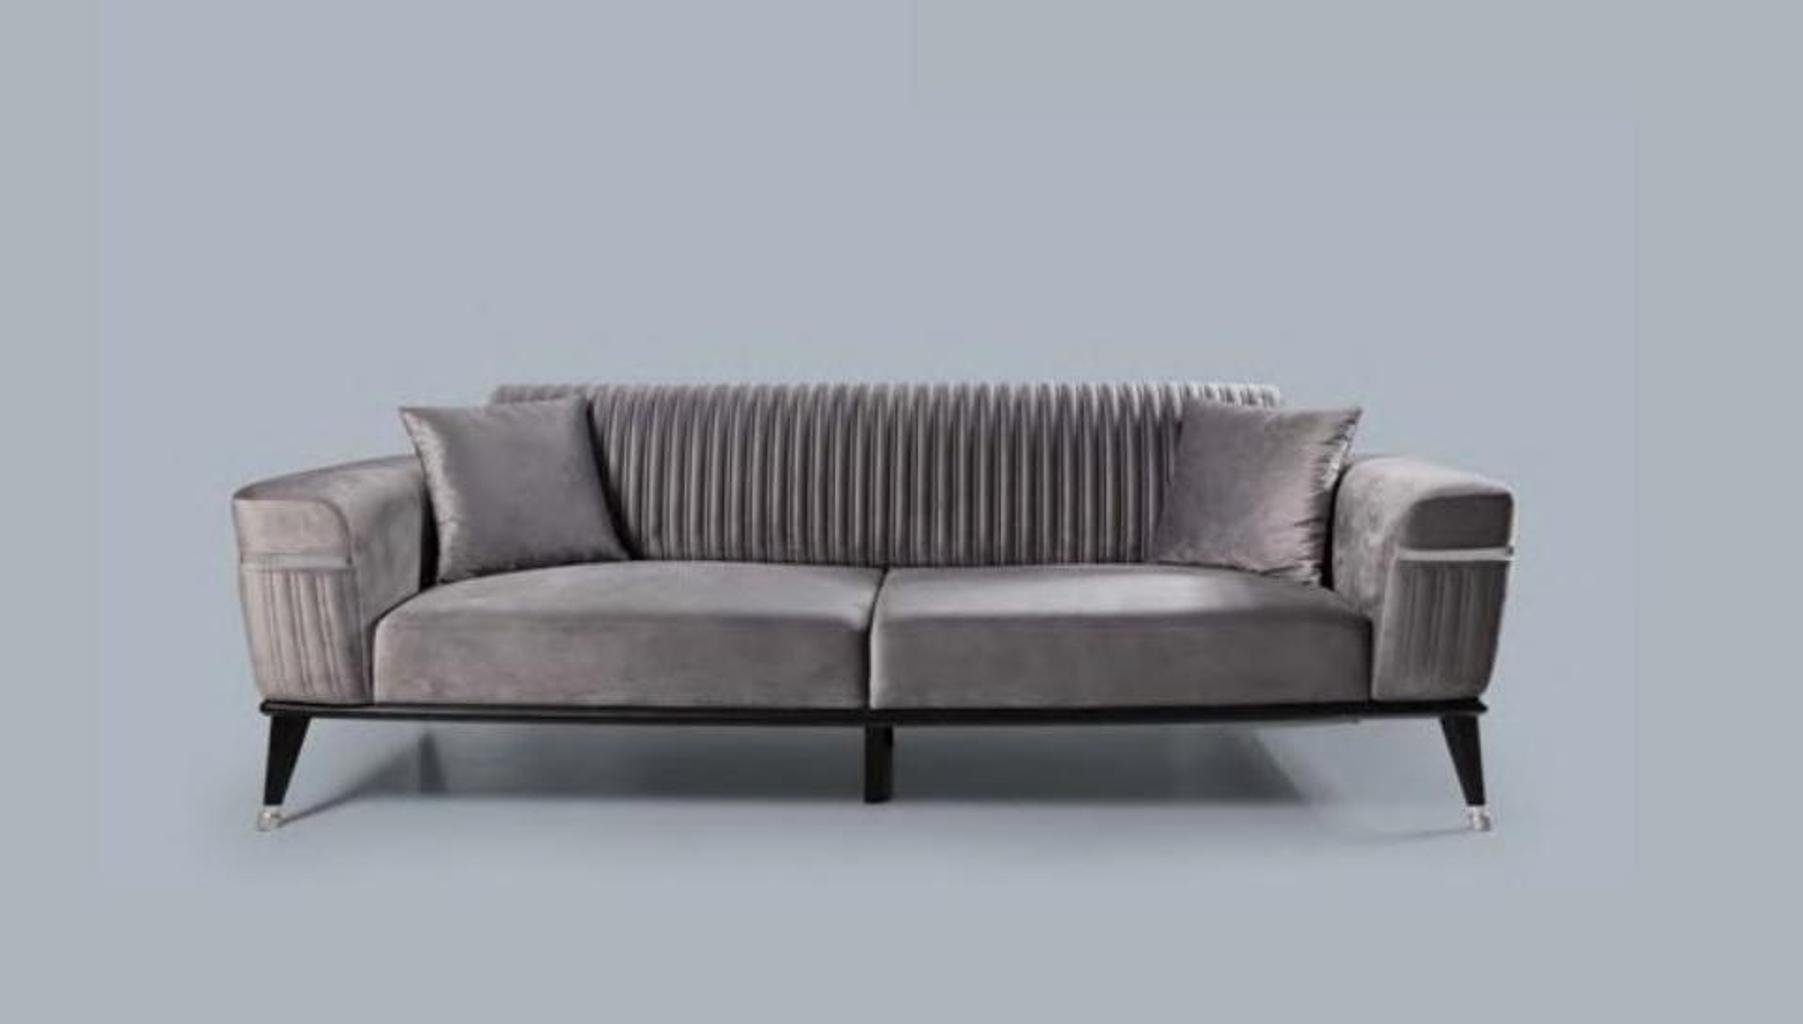 Made Couchen Grau, JVmoebel in Wohnzimmer Sofa Europe Sofa Graue Couch Möbel Luxus